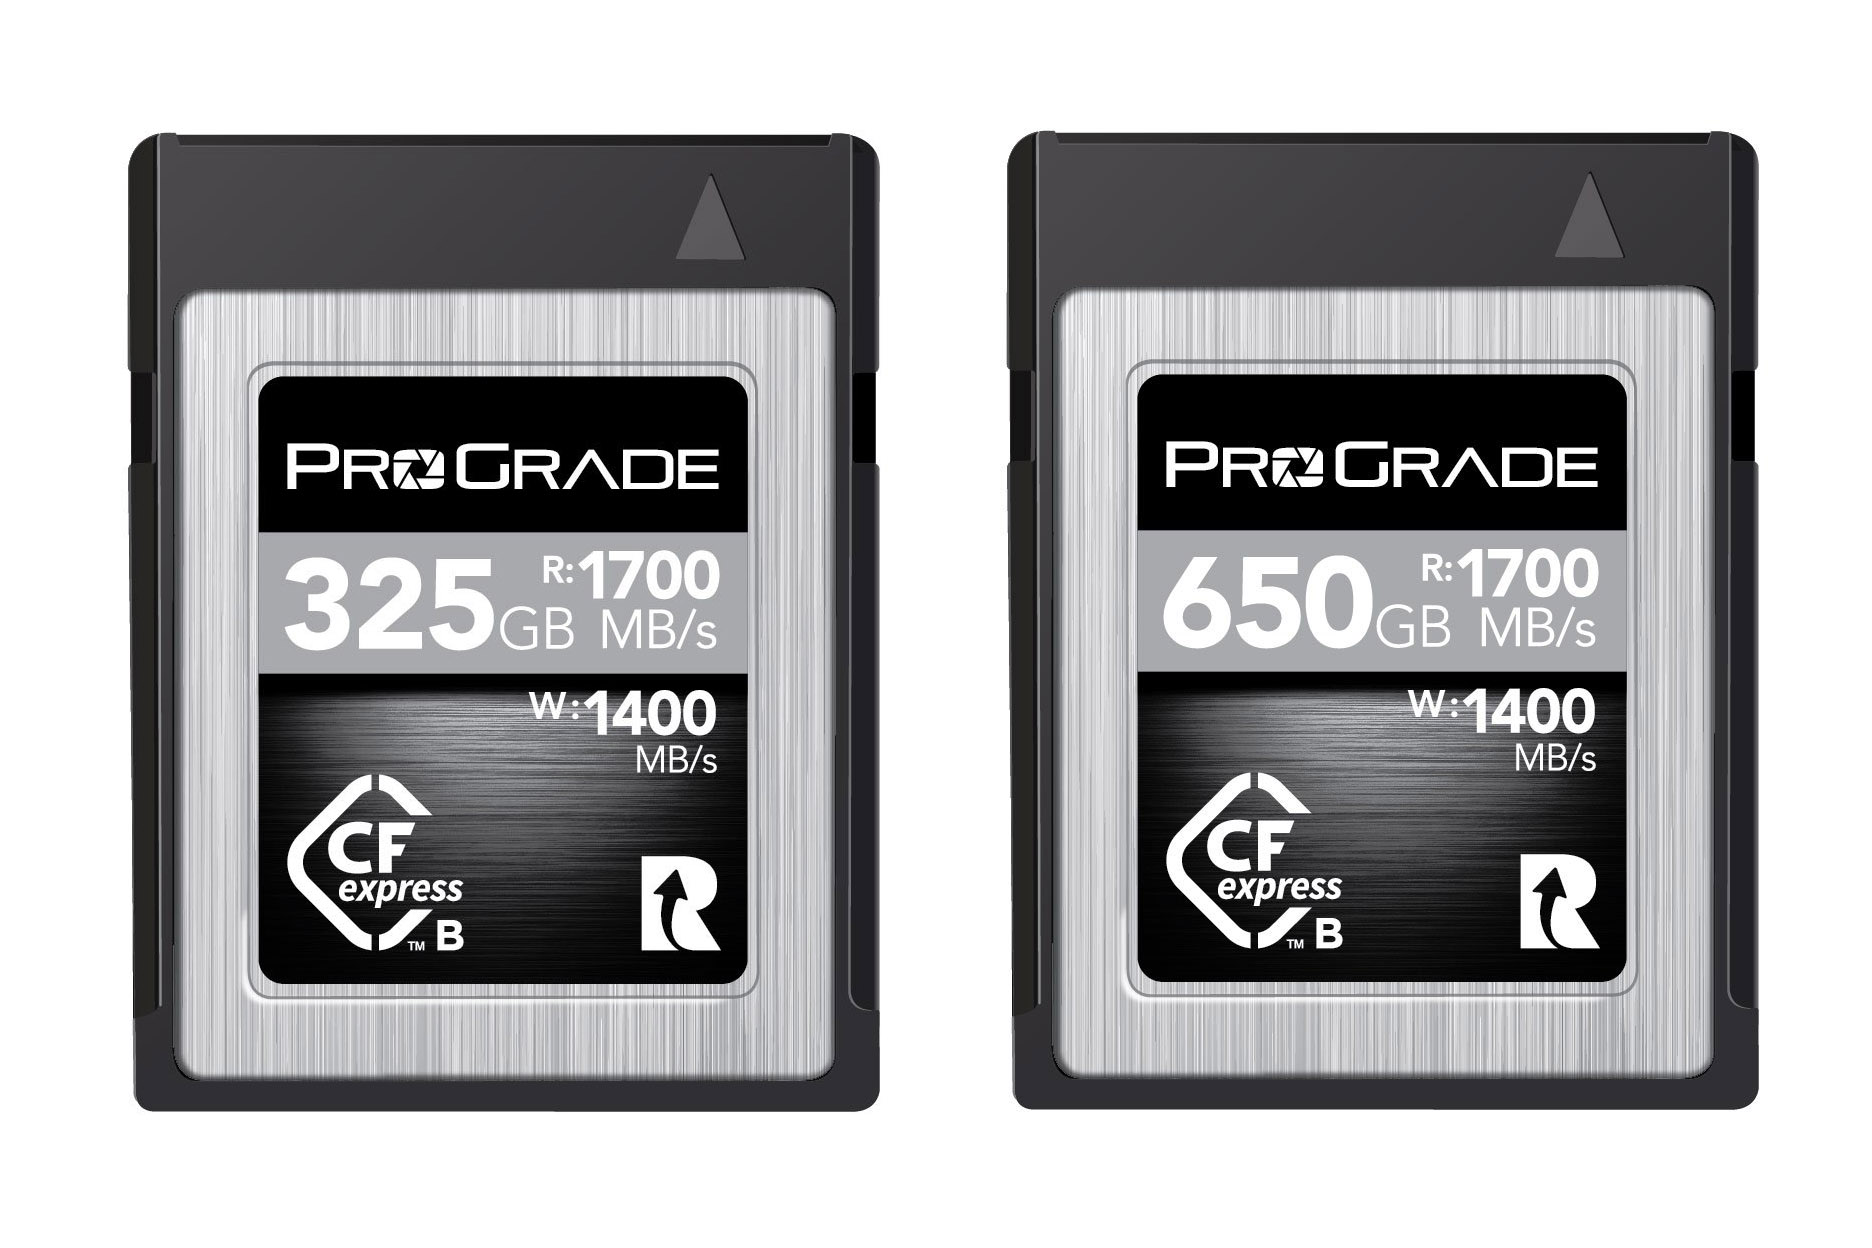 ProGrade Digital ra mắt thẻ nhớ CFexpress Type B cho tốc độ đọc lên đến 1700 MB/s